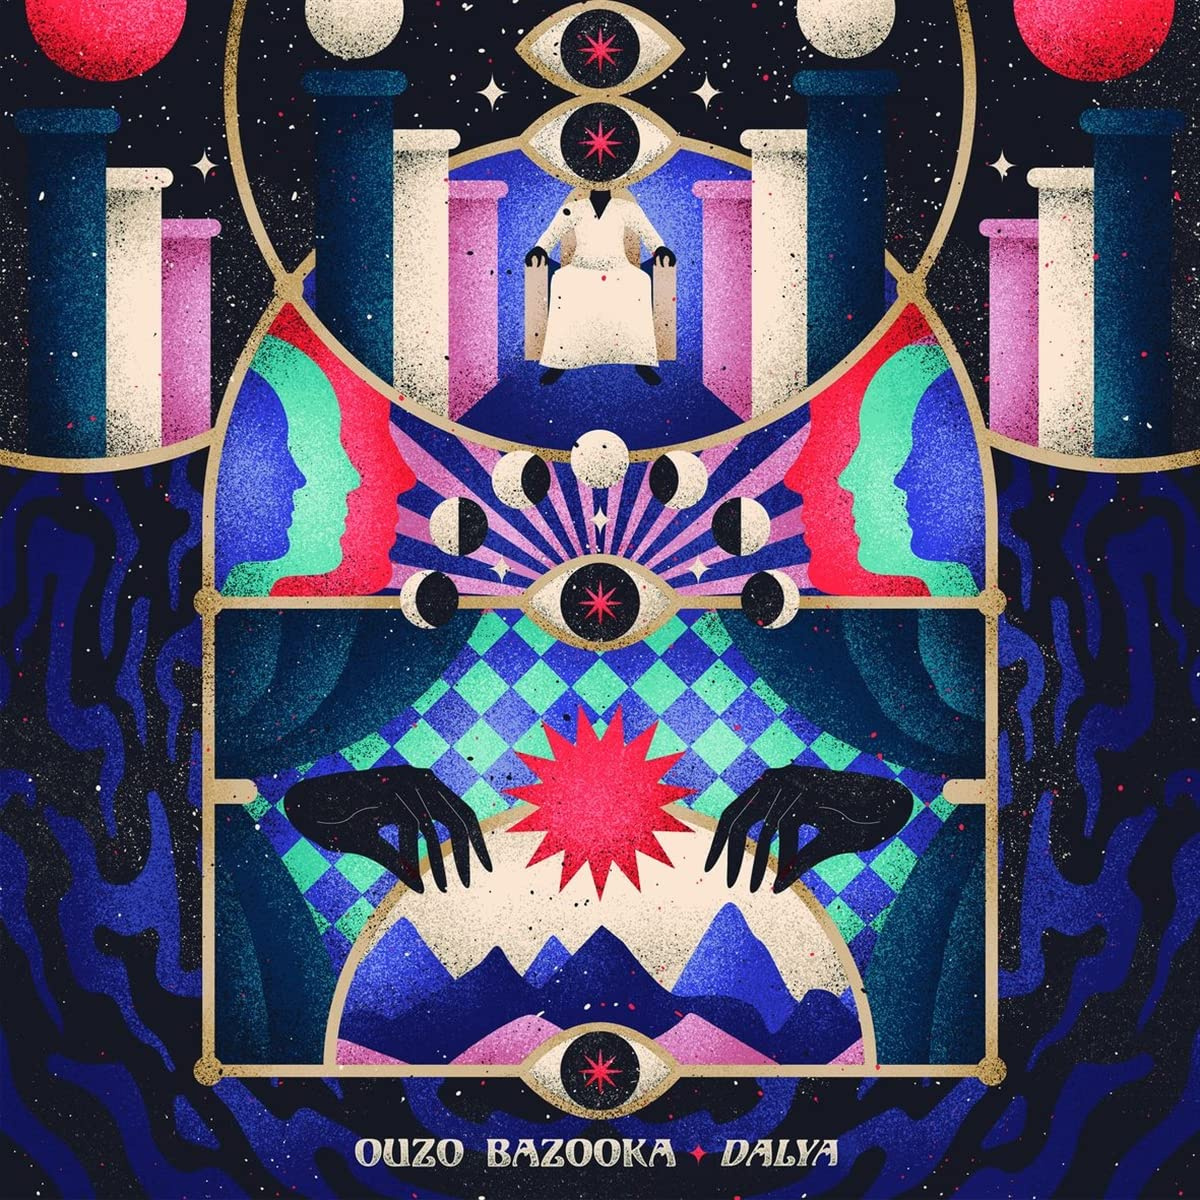 Ouzo Bazooka - Dalya vinyl cover